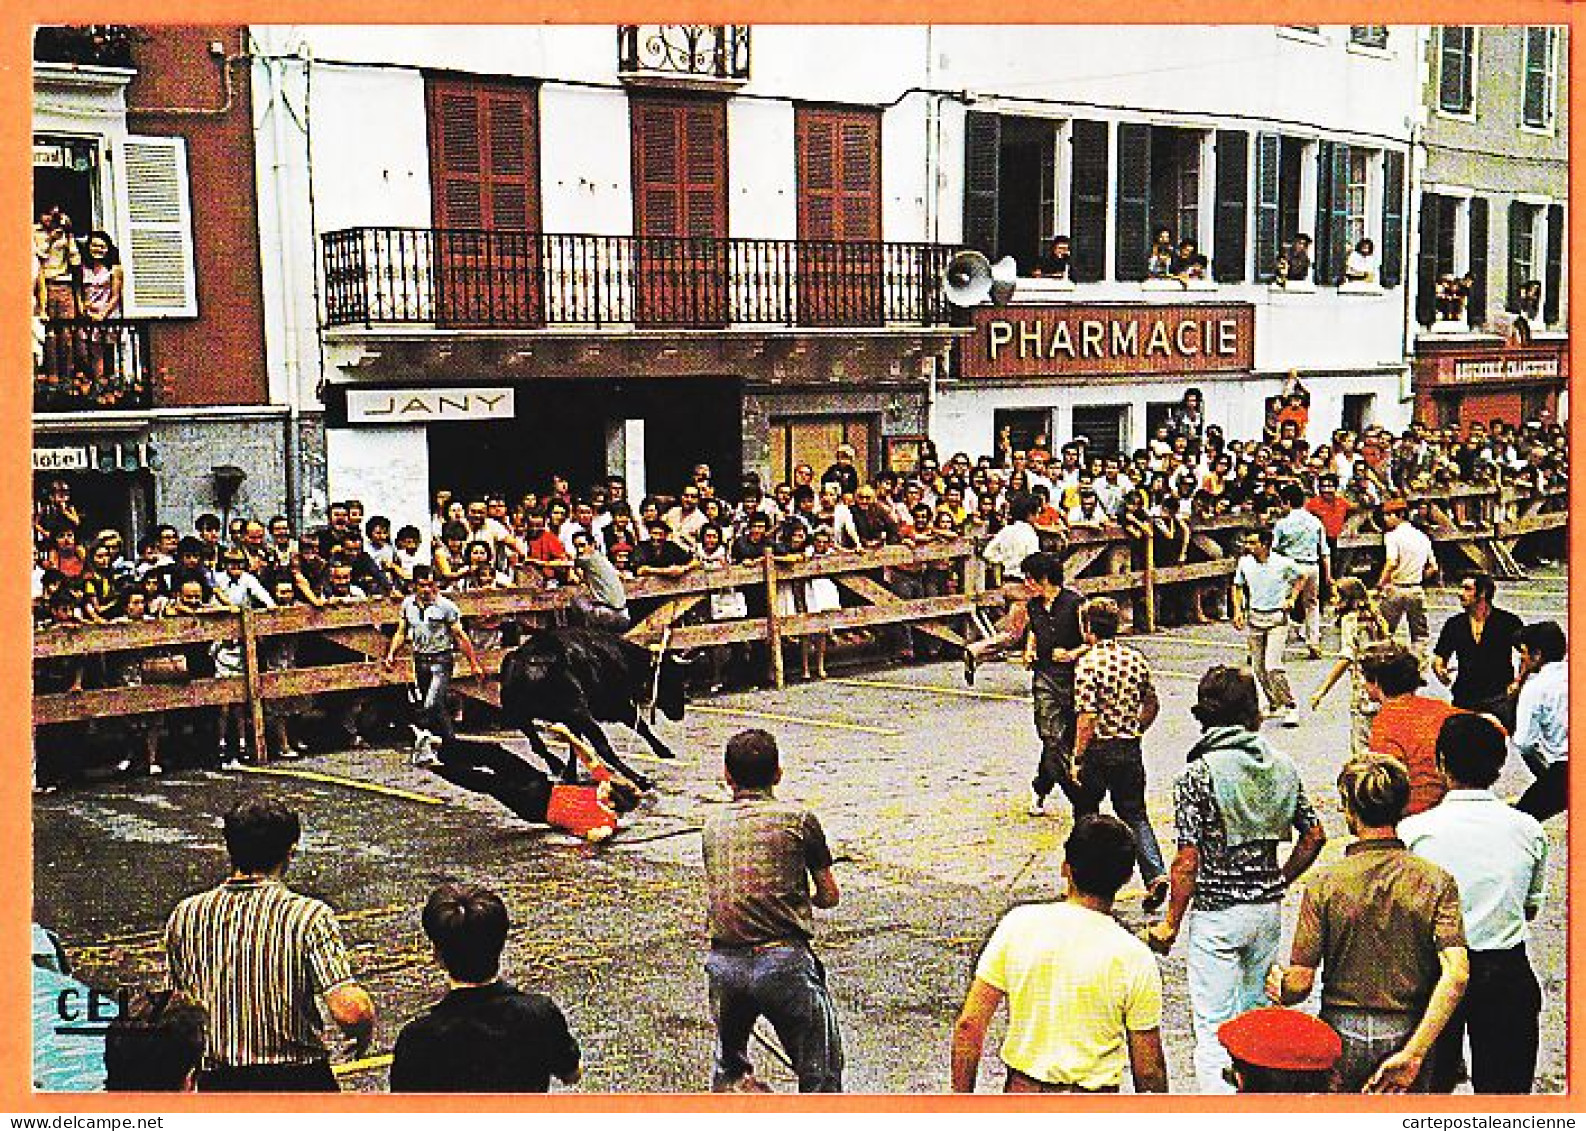 20684 / HASPARREN 64-Euskadi Pharmacie Courses De Vaches Dans Les Rues Folklore Pays Basque 1975s CELY 3151 - Hasparren